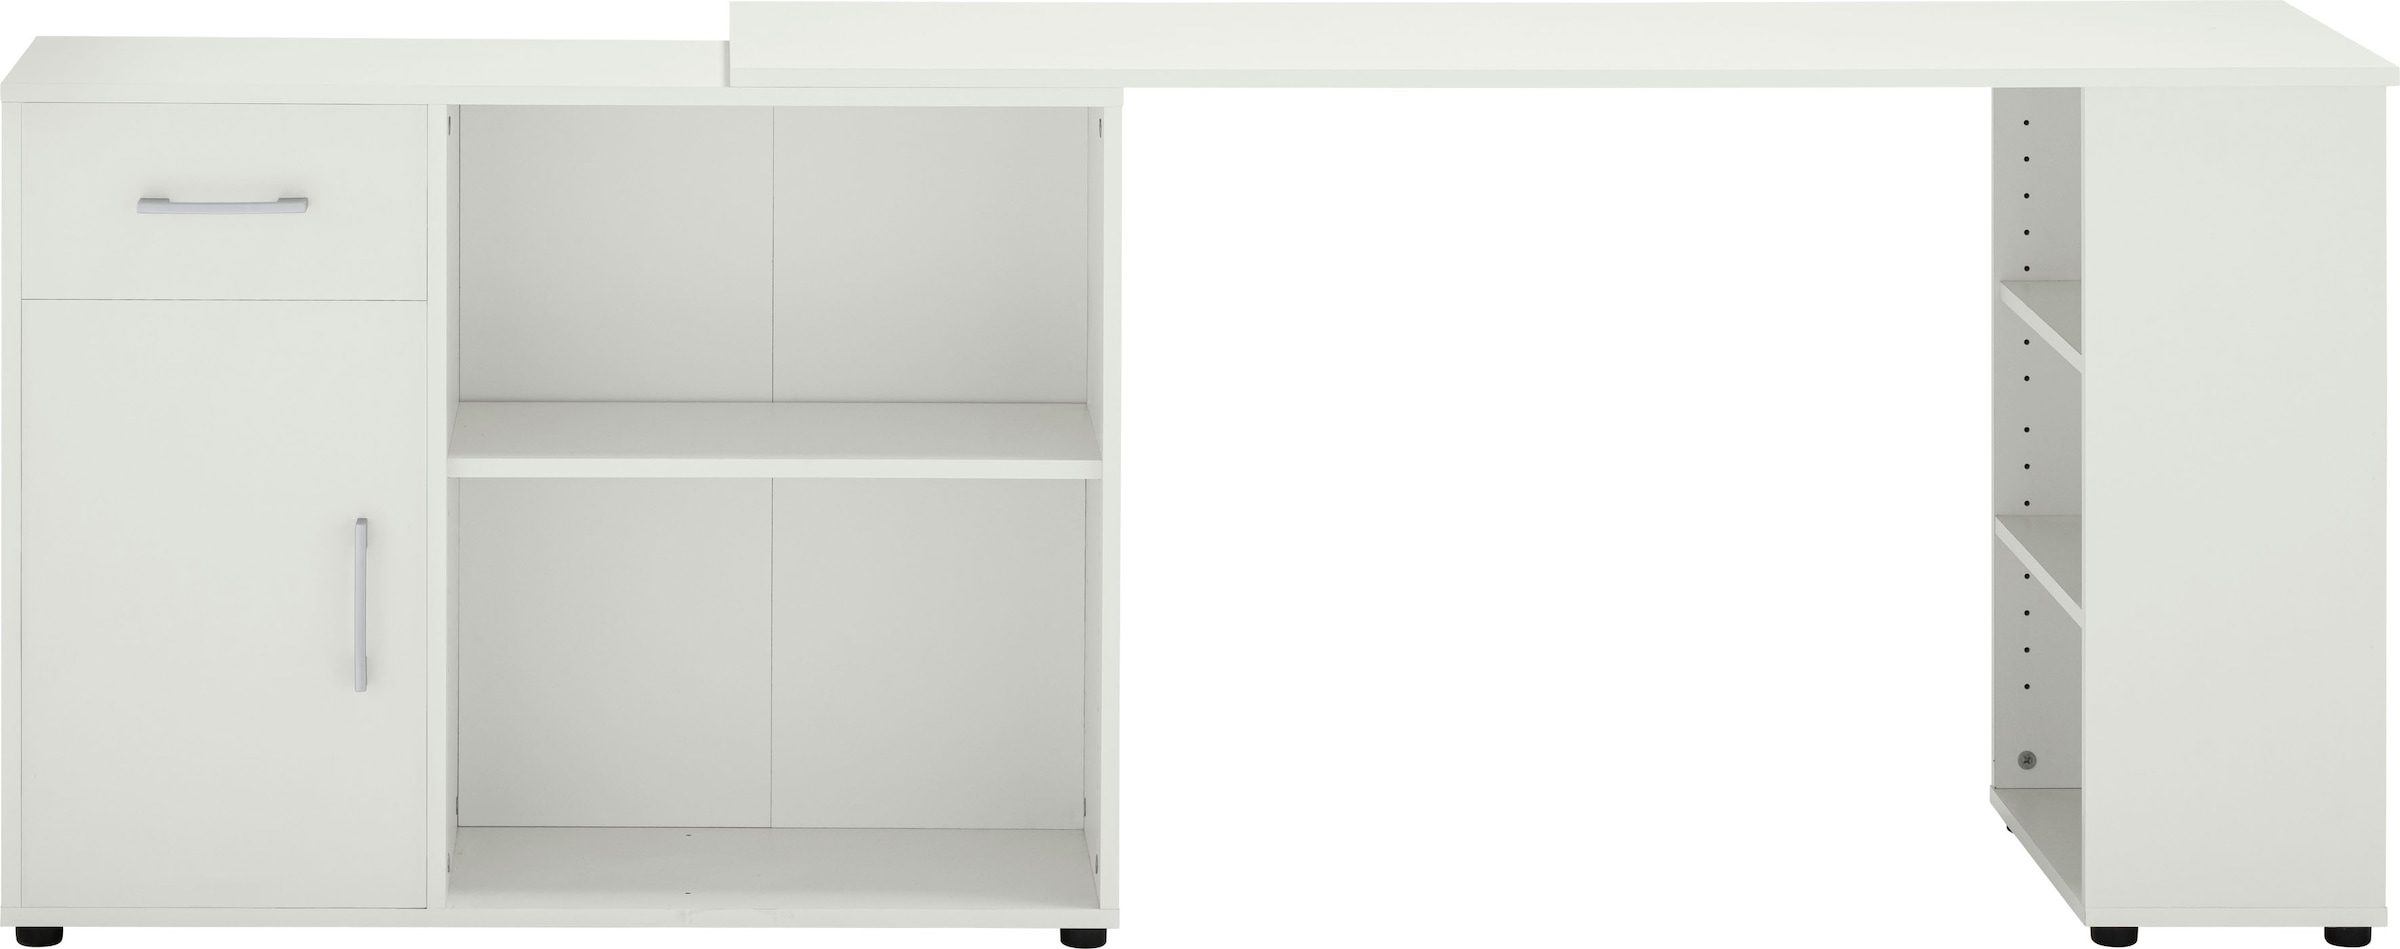 VOGL Möbelfabrik Eckschreibtisch online »Ecki« bestellen